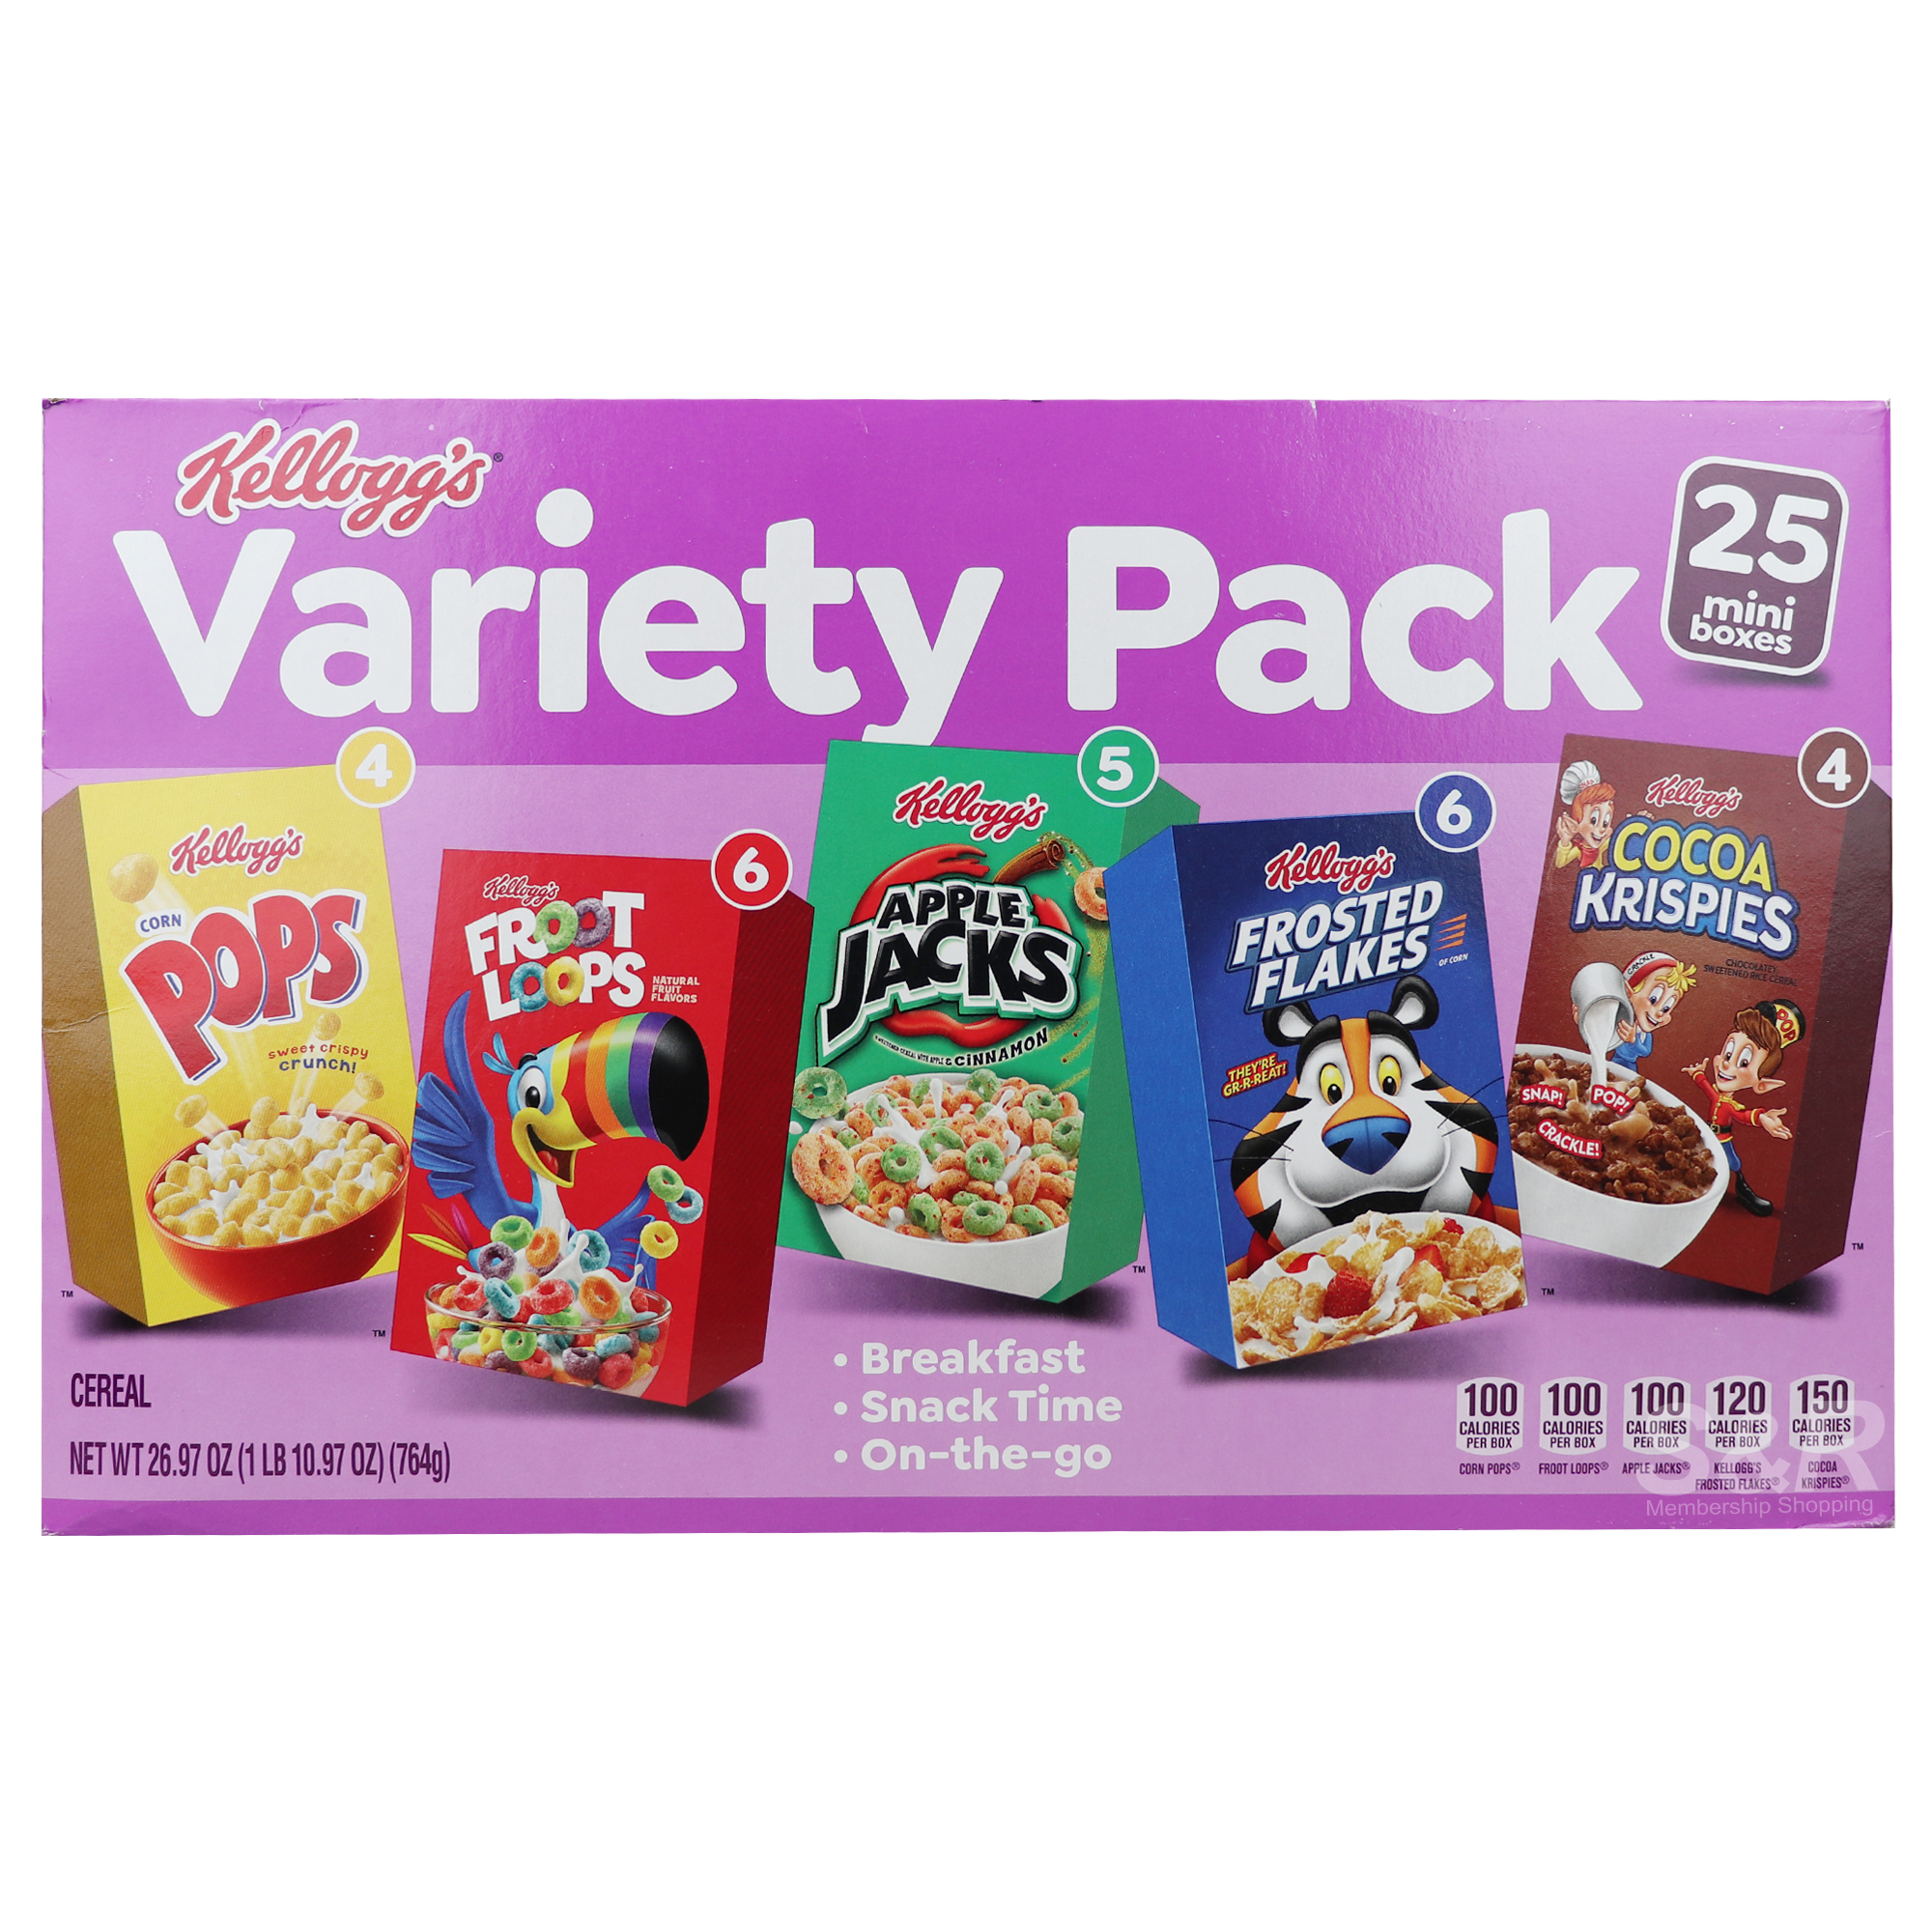 Kellogg's Variety Pack Cereal 25pcs